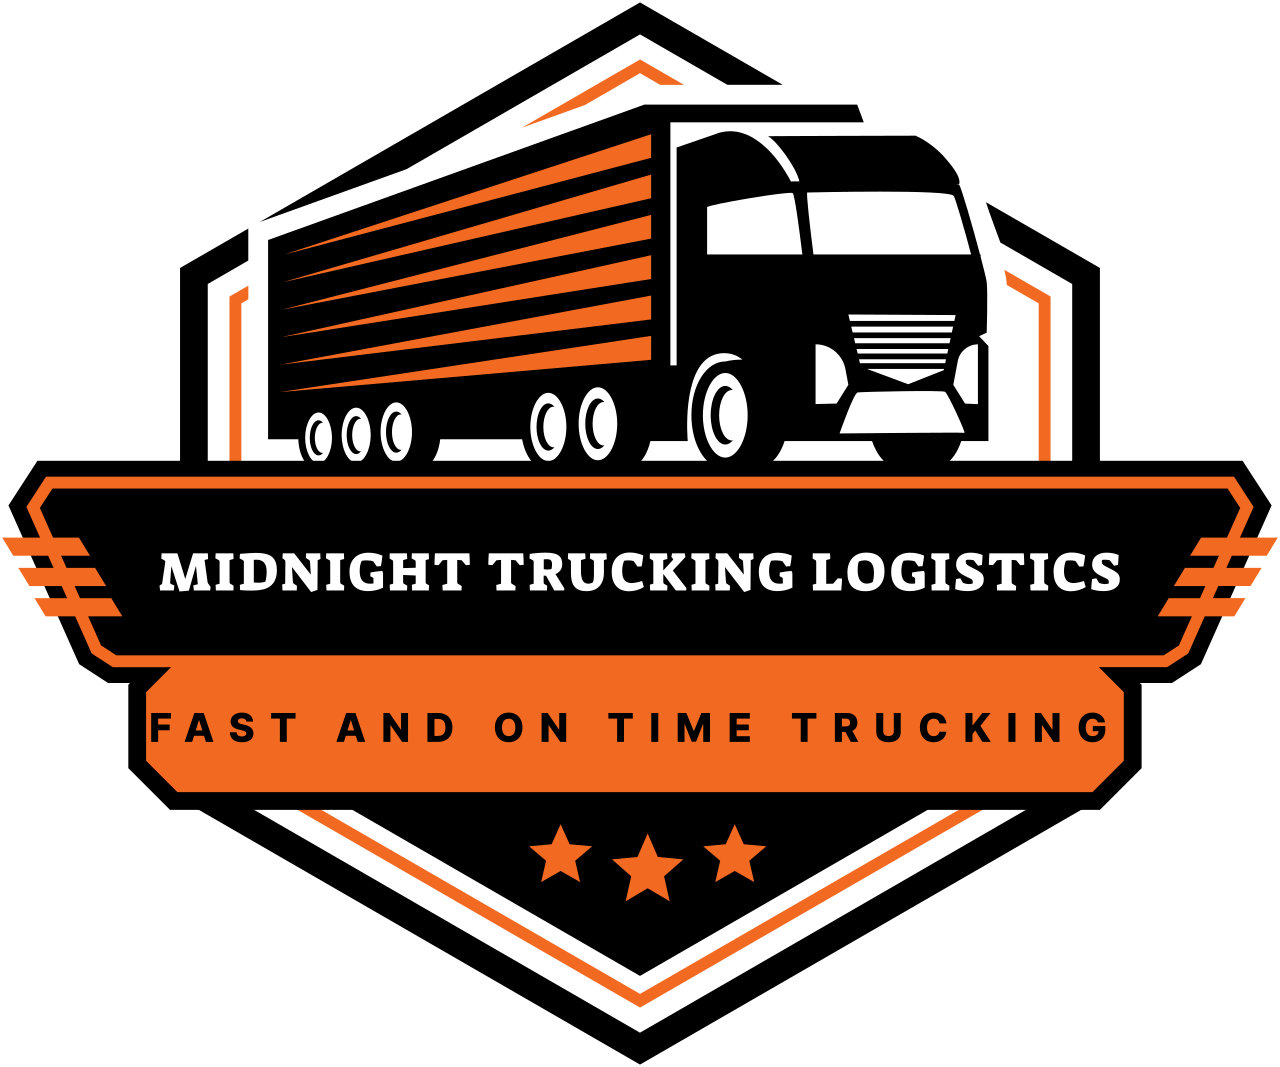 Midnight Trucking Logistics's logo